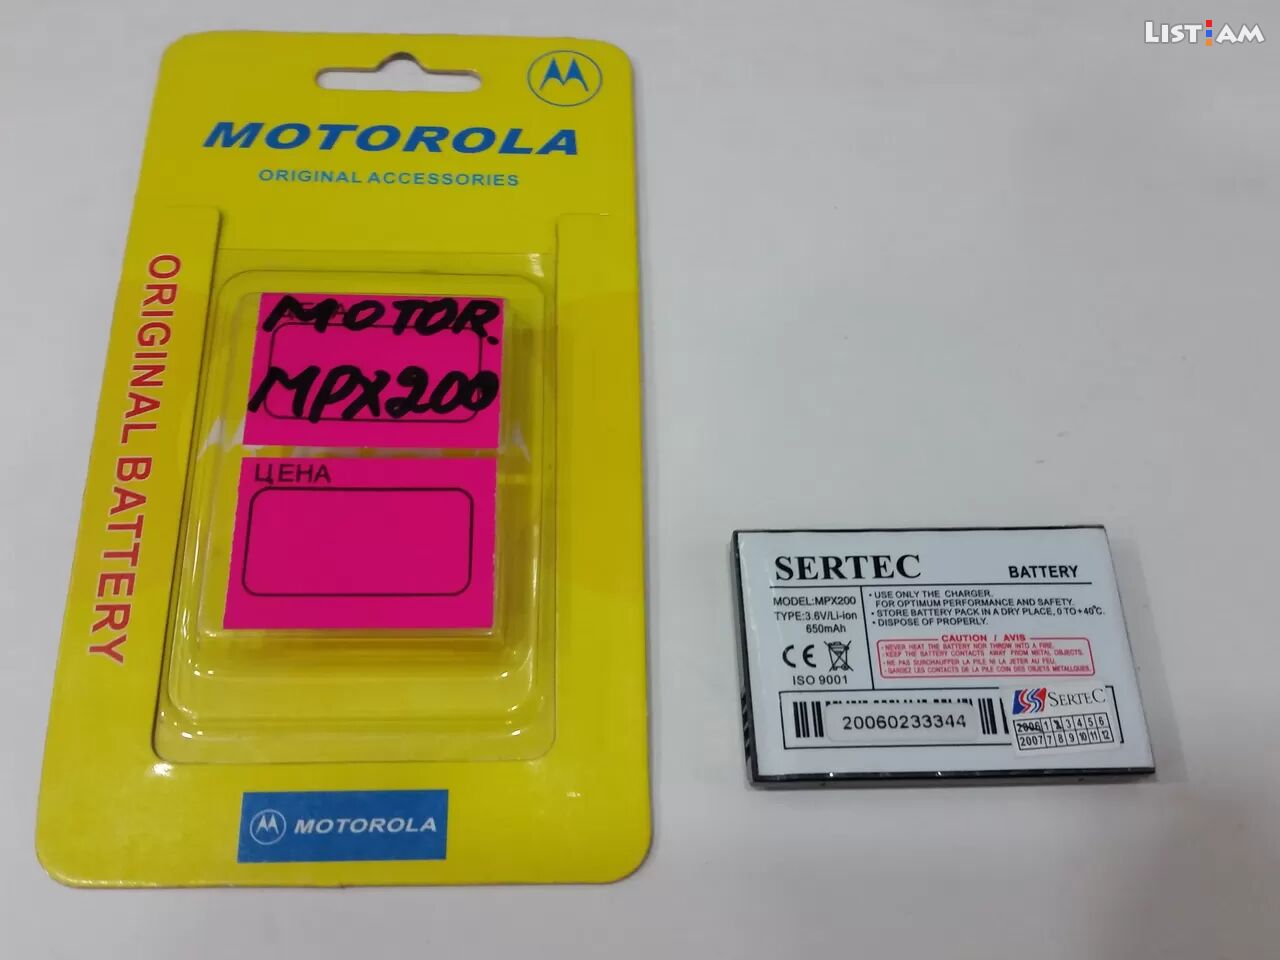 Motorola mpx200